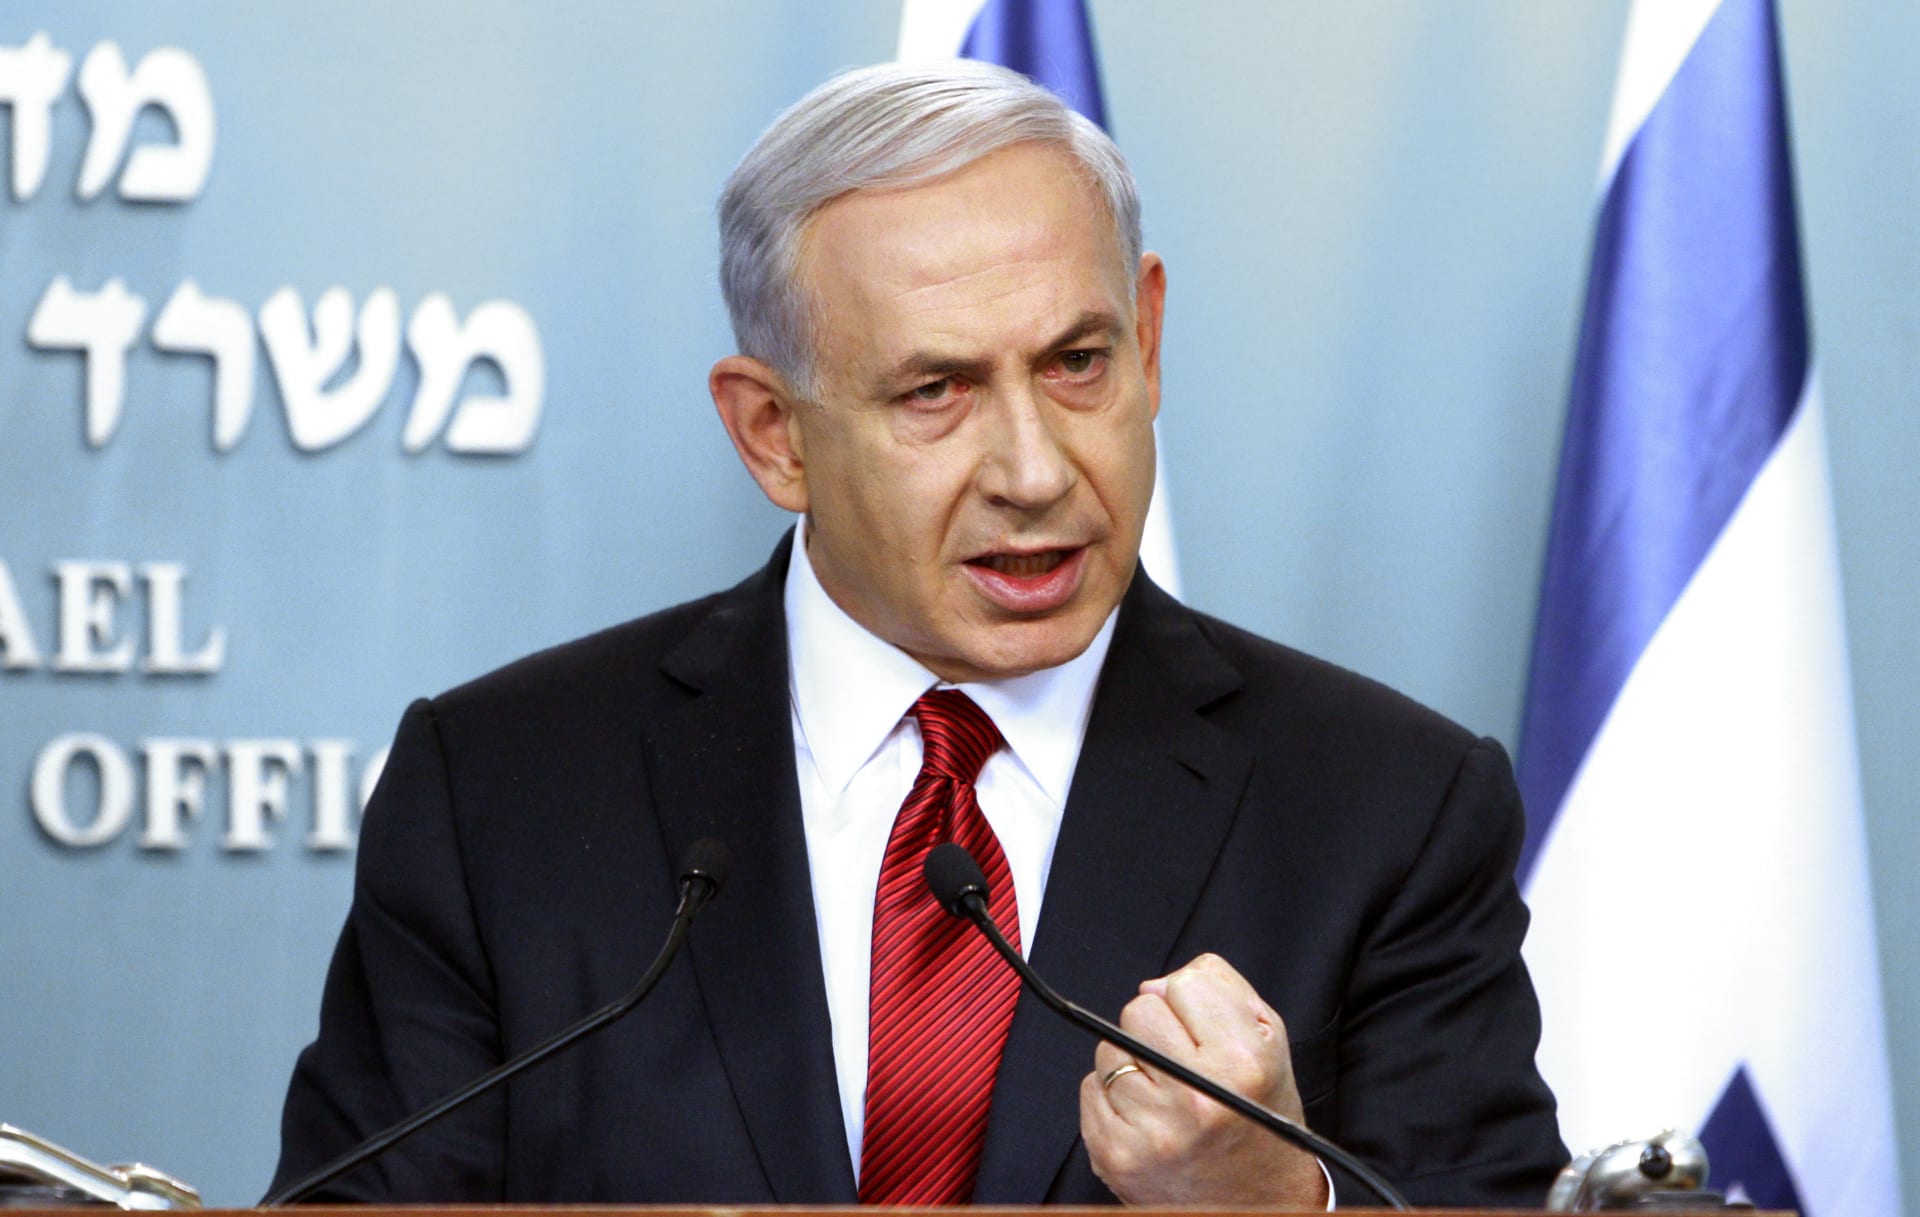 إسرائيل تباشر هدم منازل منفذي هجمات القدس ووزير الخارجية البحريني يندد بـ"قتل الأبرياء" في كنيس يهودي